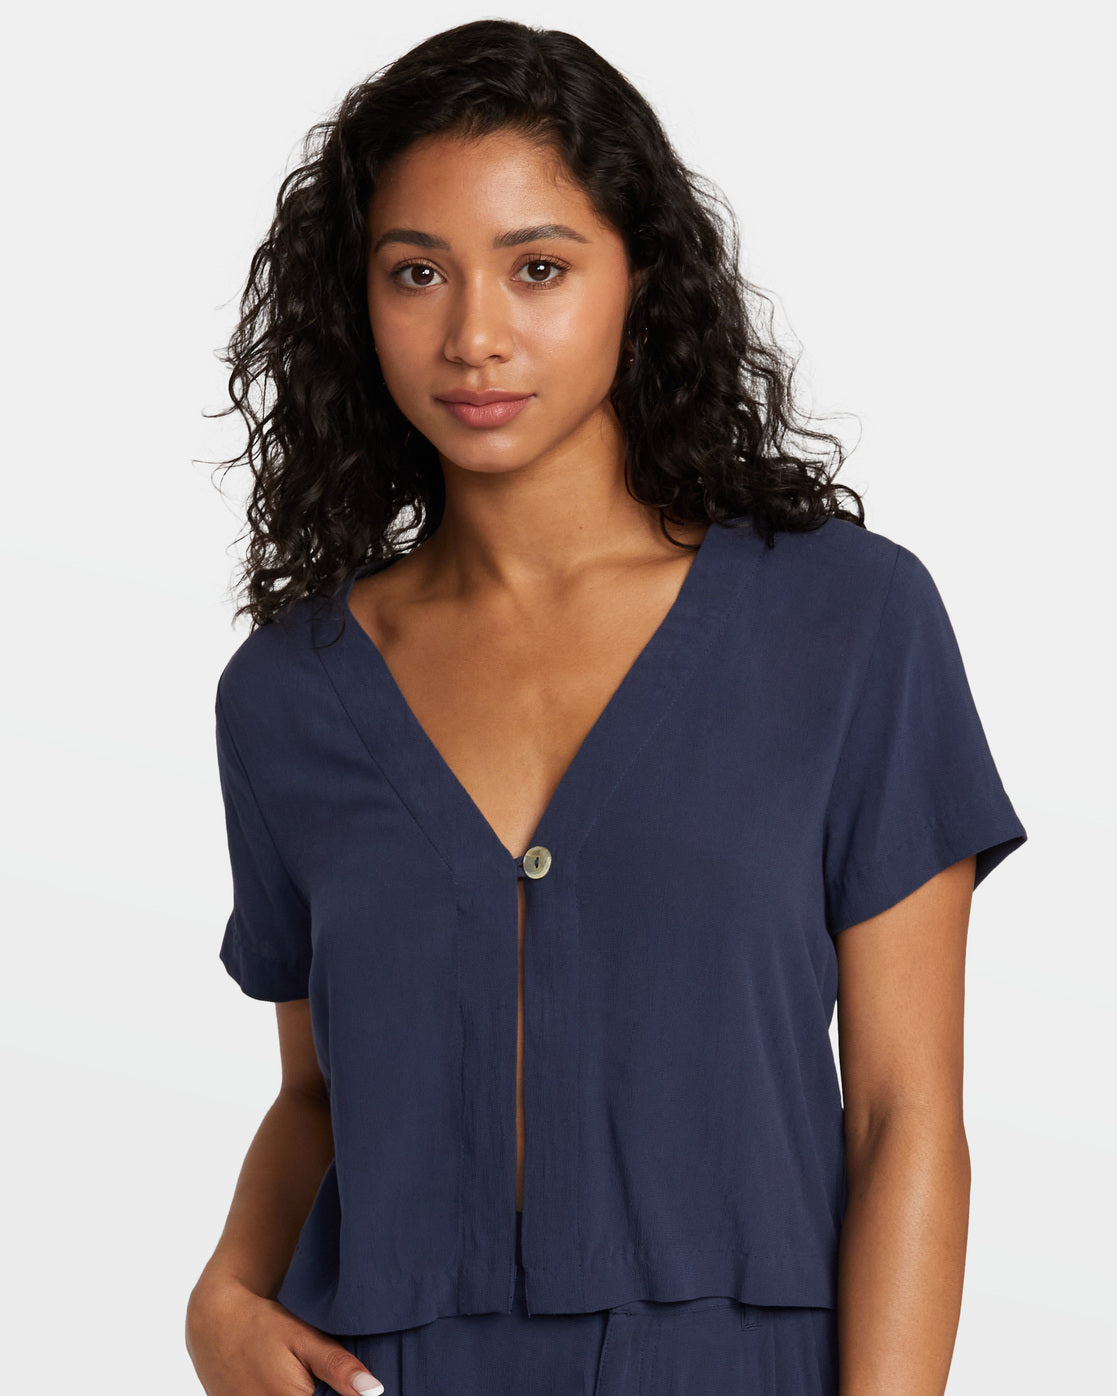 Vista Top Woven Shirt - Moody Blue – RVCA.com